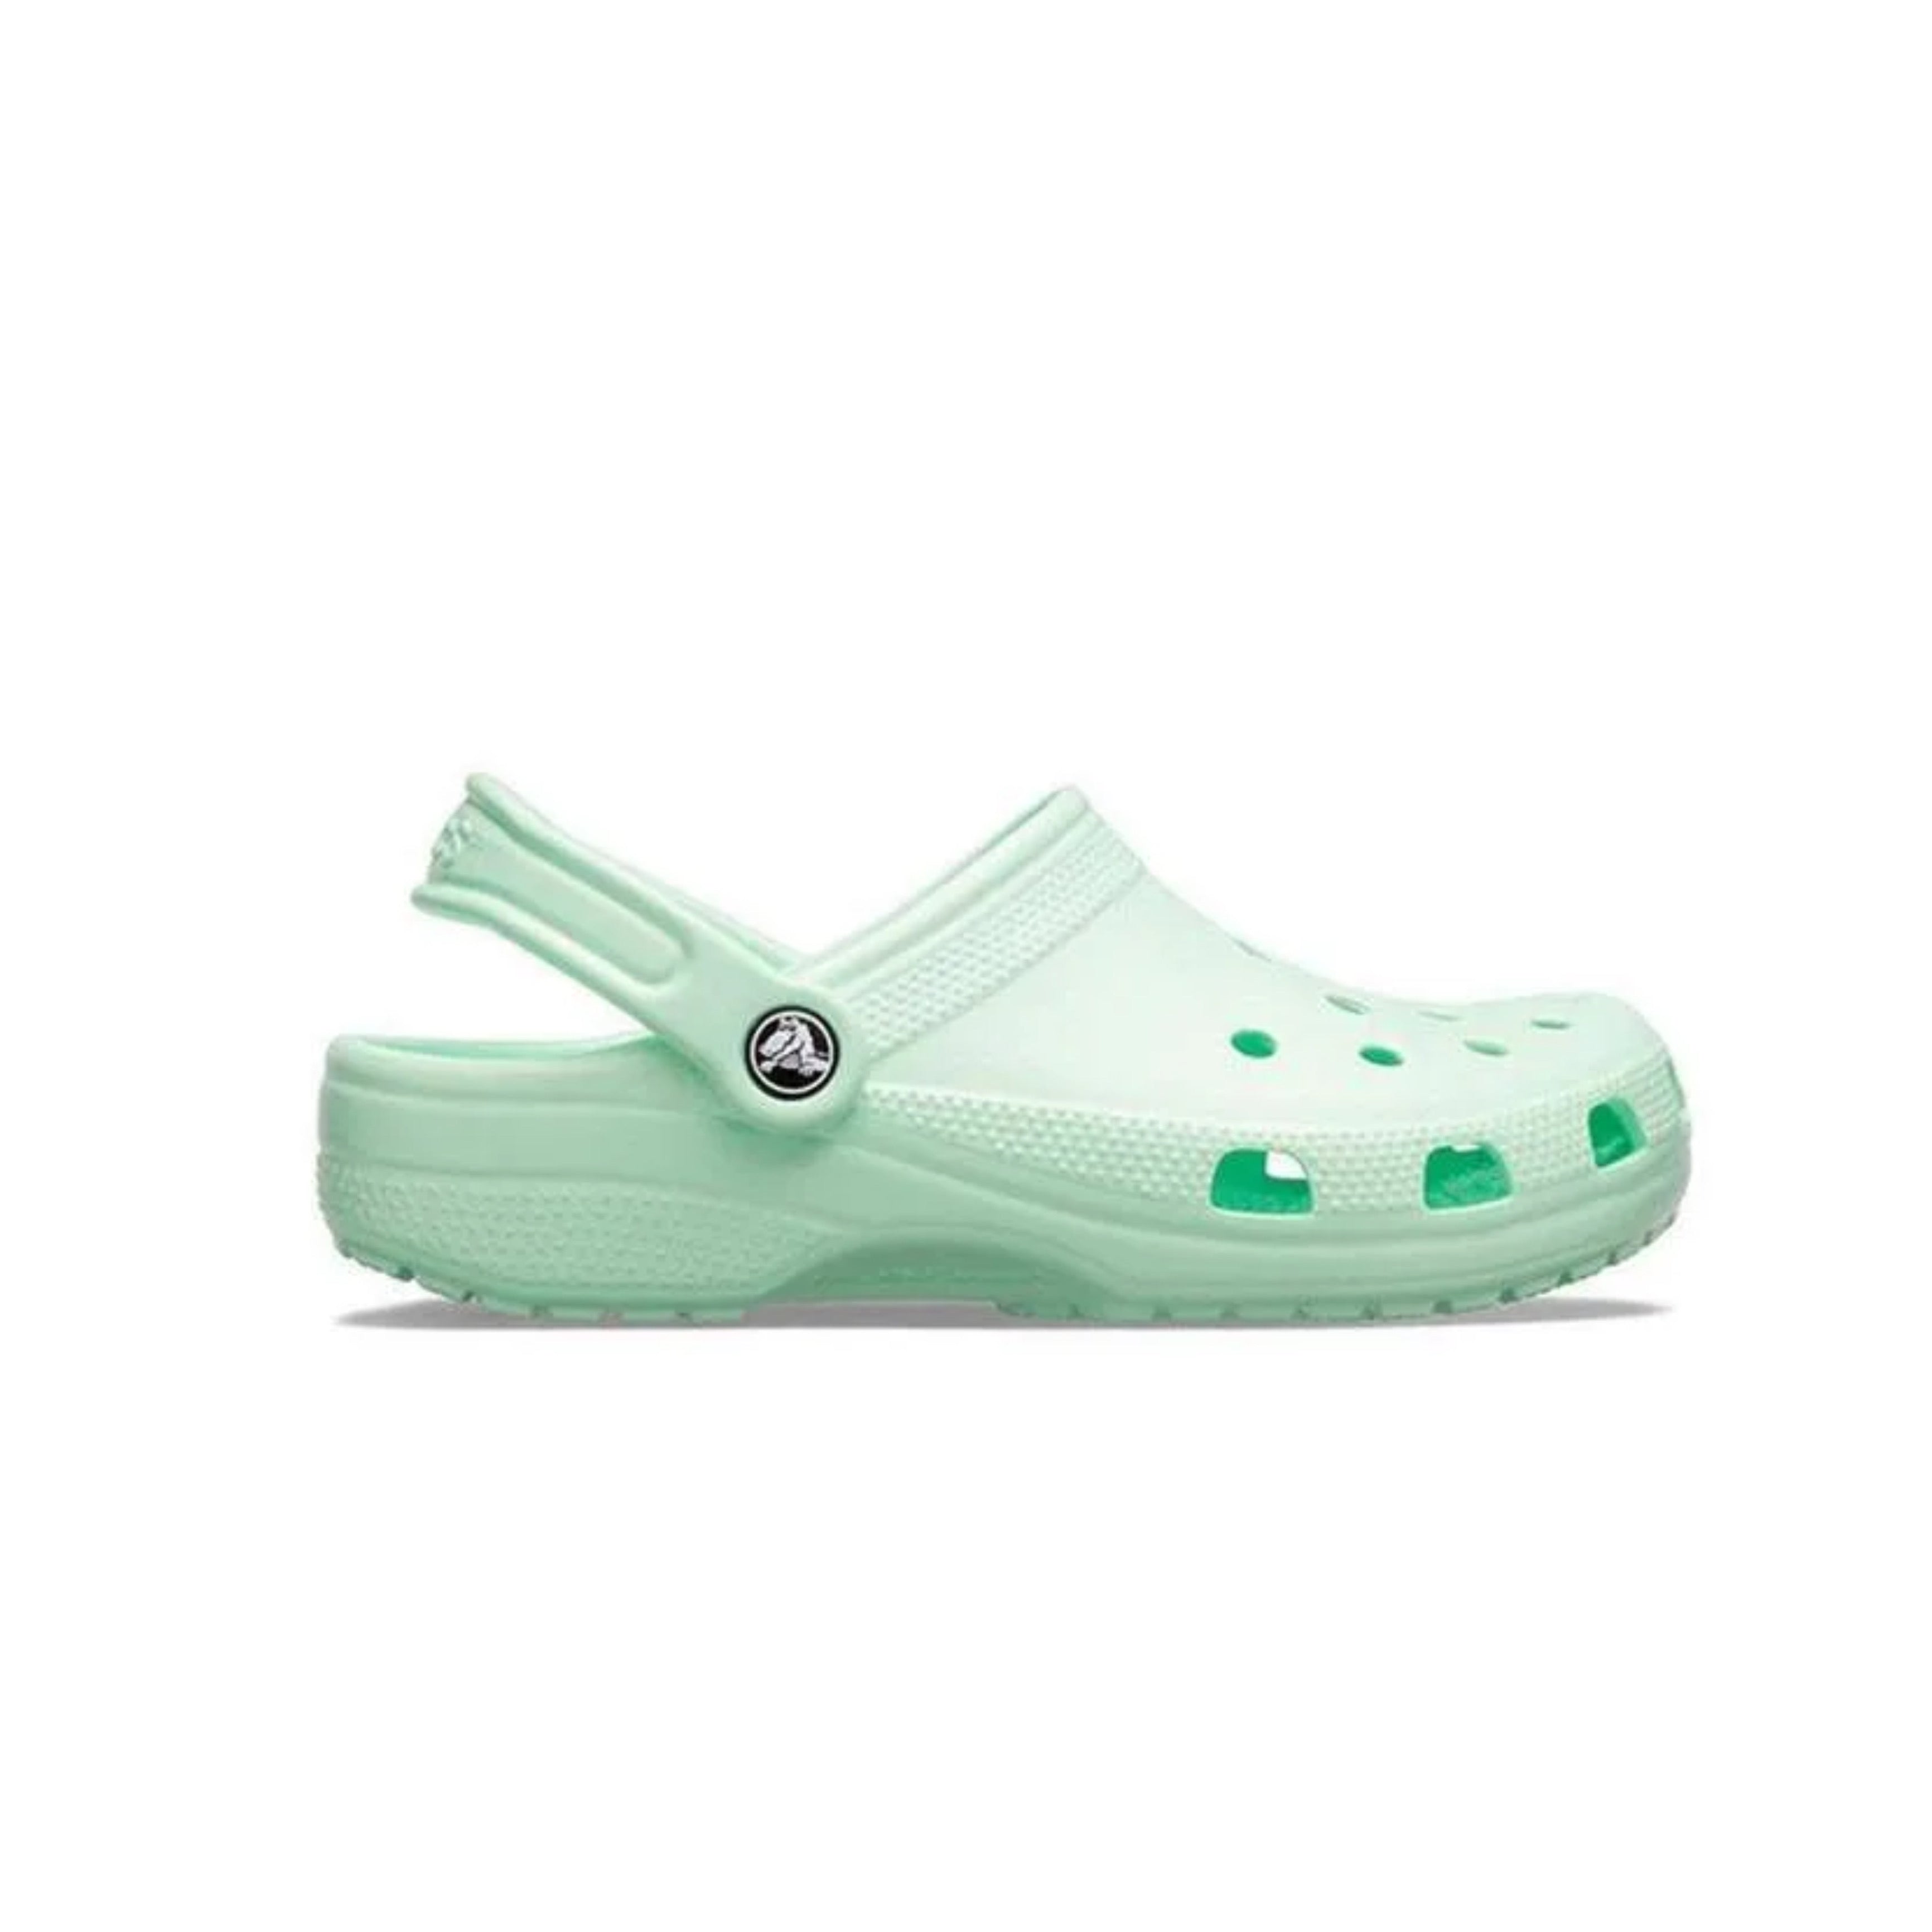 Crocs mint green